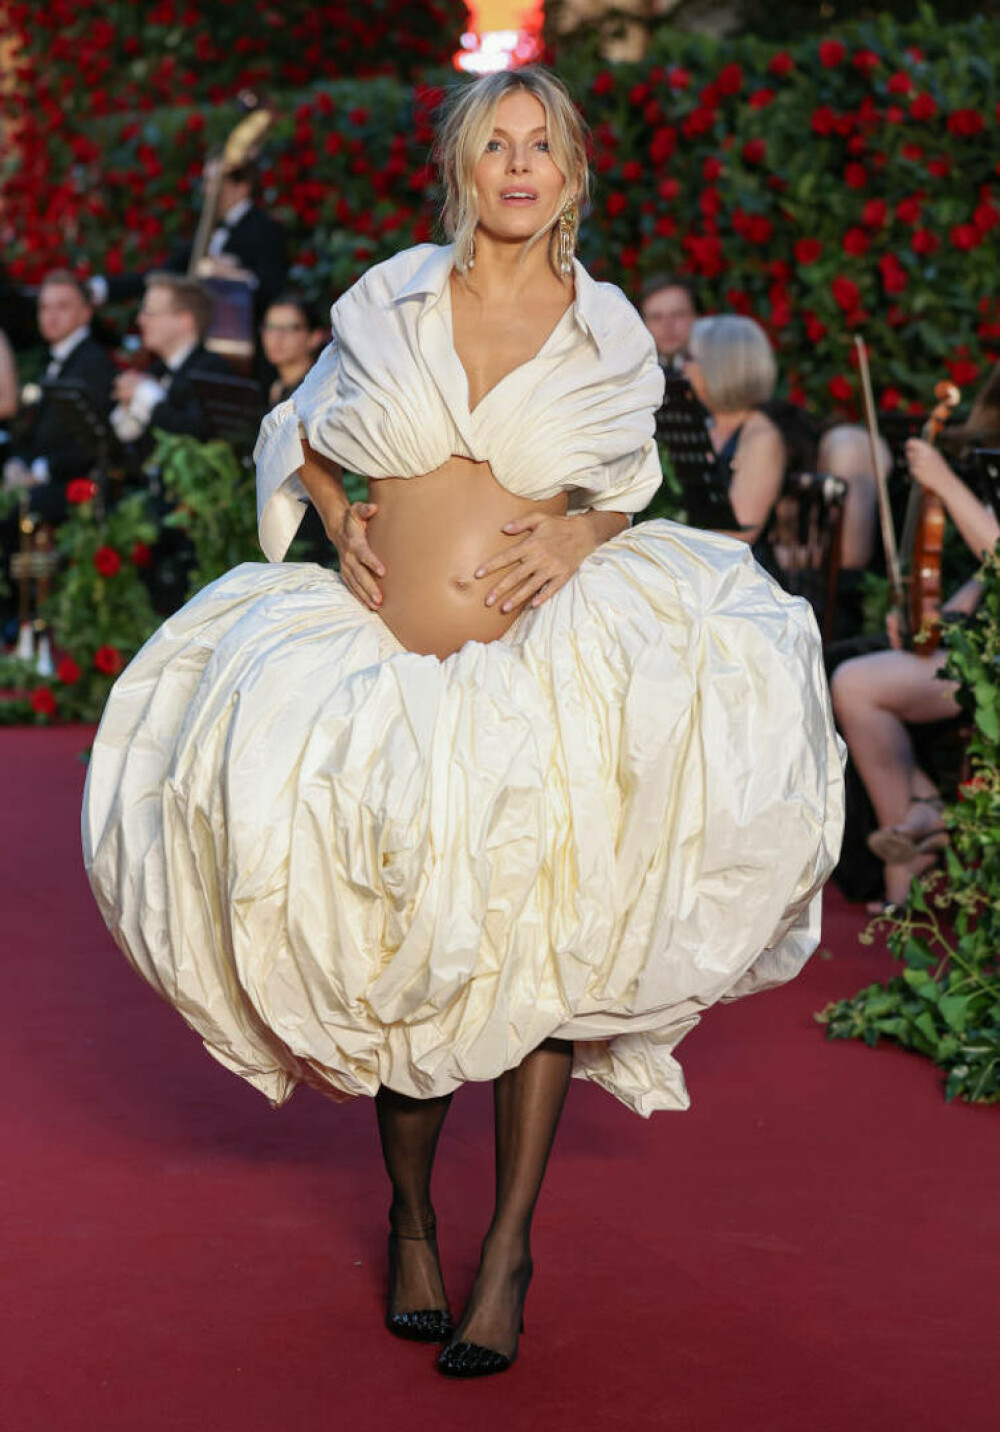 Apariții șoc la Săptămâna Modei de la Londra. Graviduța care și-a arătat burtica într-o rochie albă îndrăzneață | FOTO - Imaginea 5